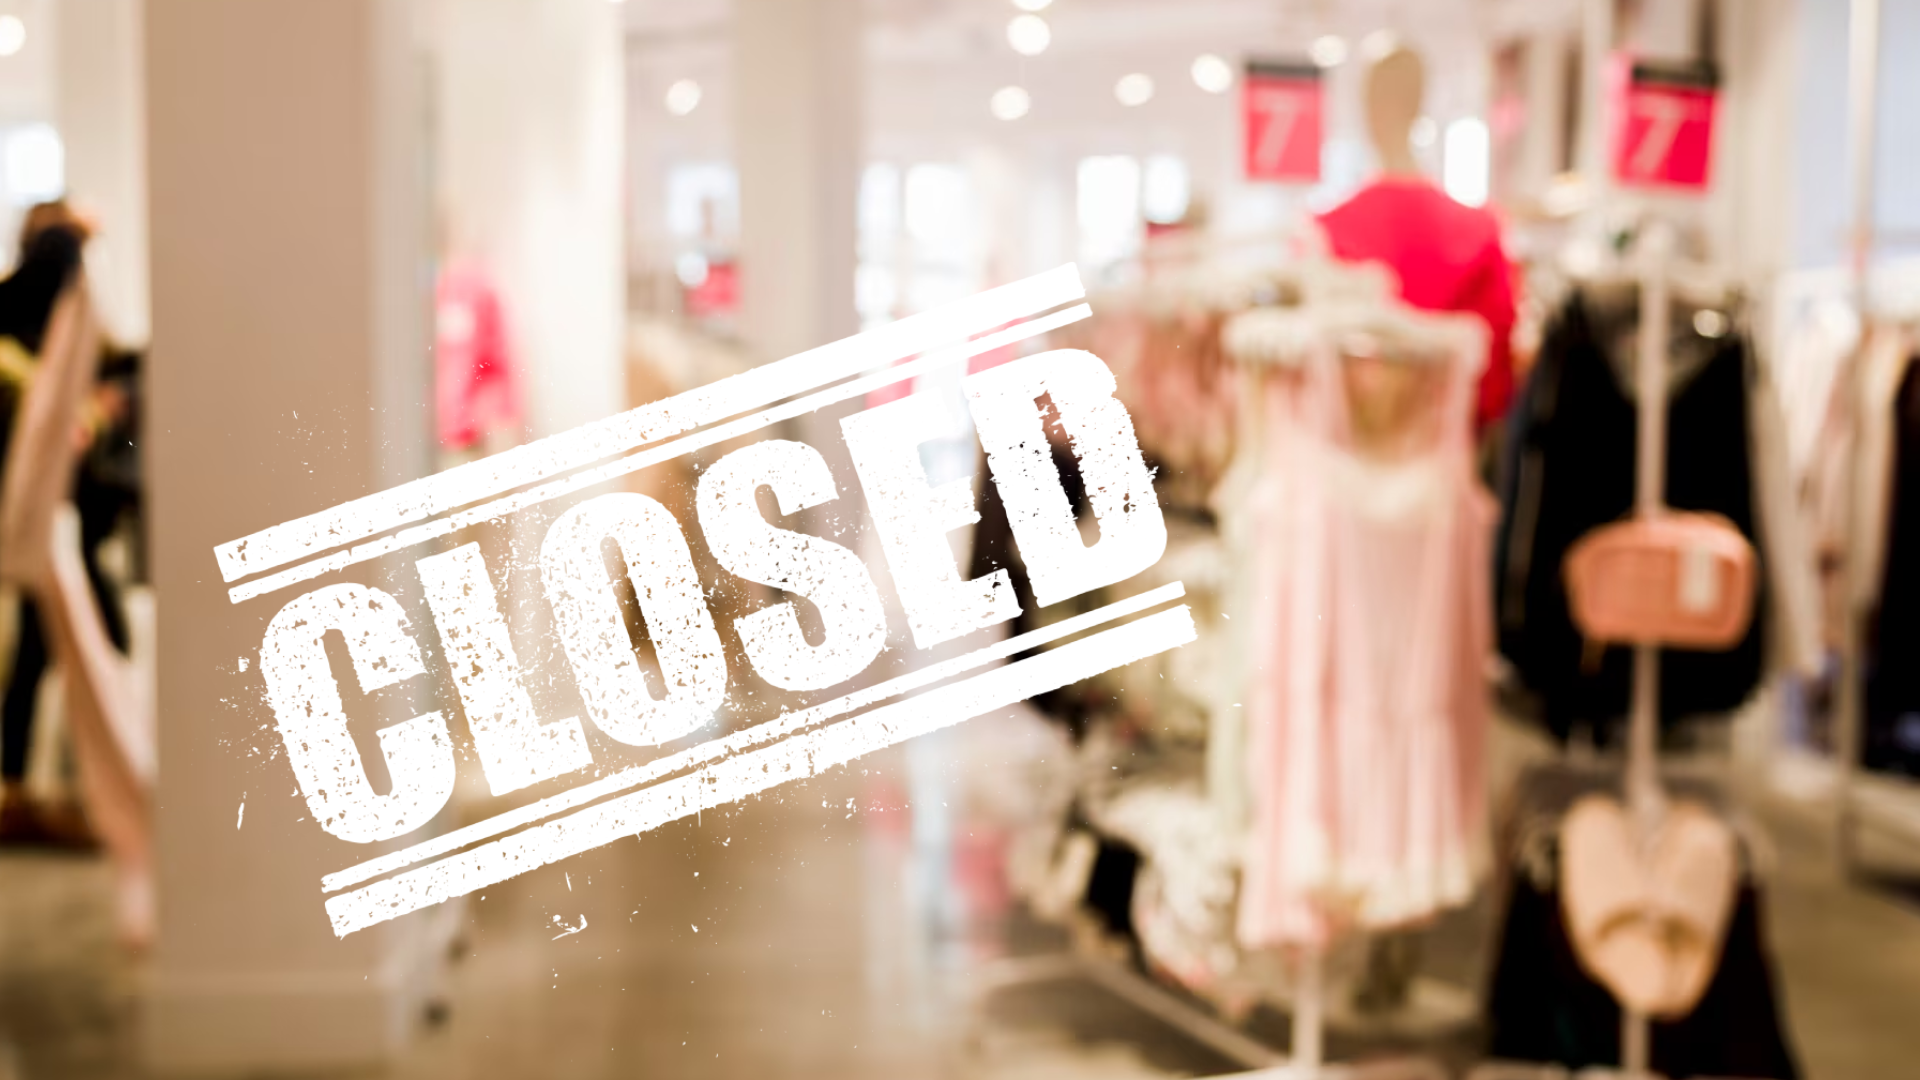 Epoca de aur se încheie! Încă un magazin de fashion intră în insolvență după 50 de ani